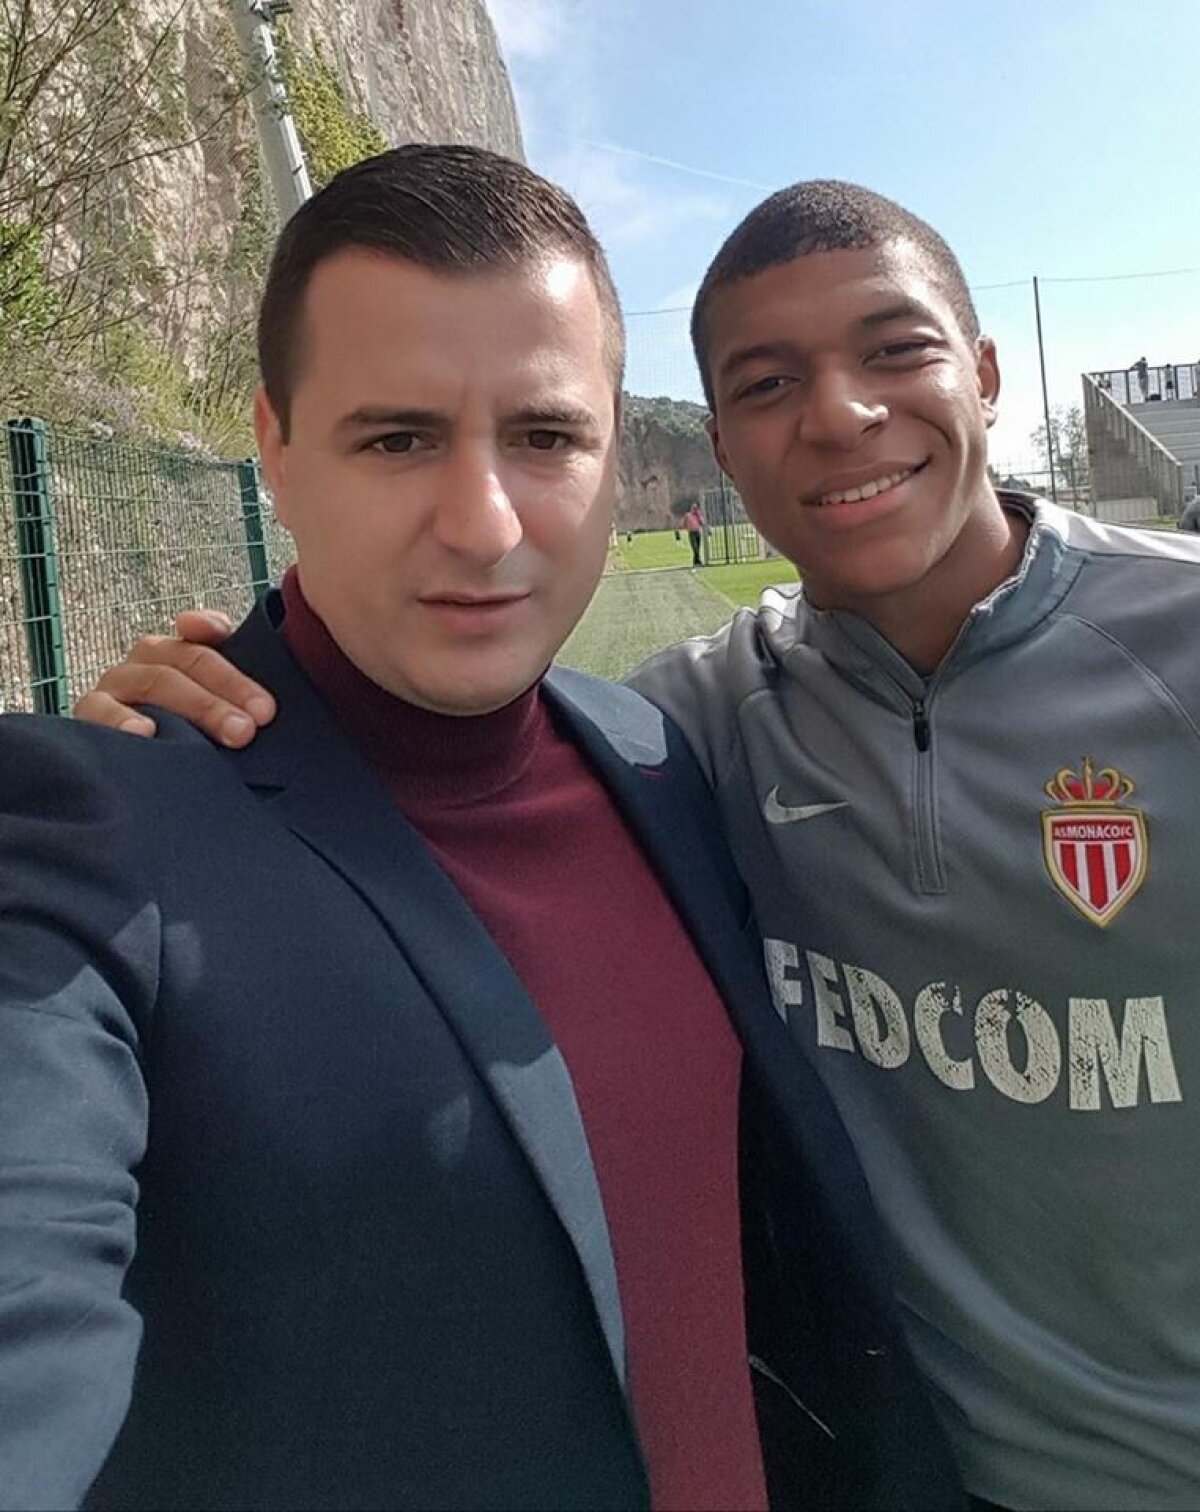 FOTO Întâlnire de gradul 0 între Zicu și antrenorul lui AS Monaco: "E cel mai bun din lume"